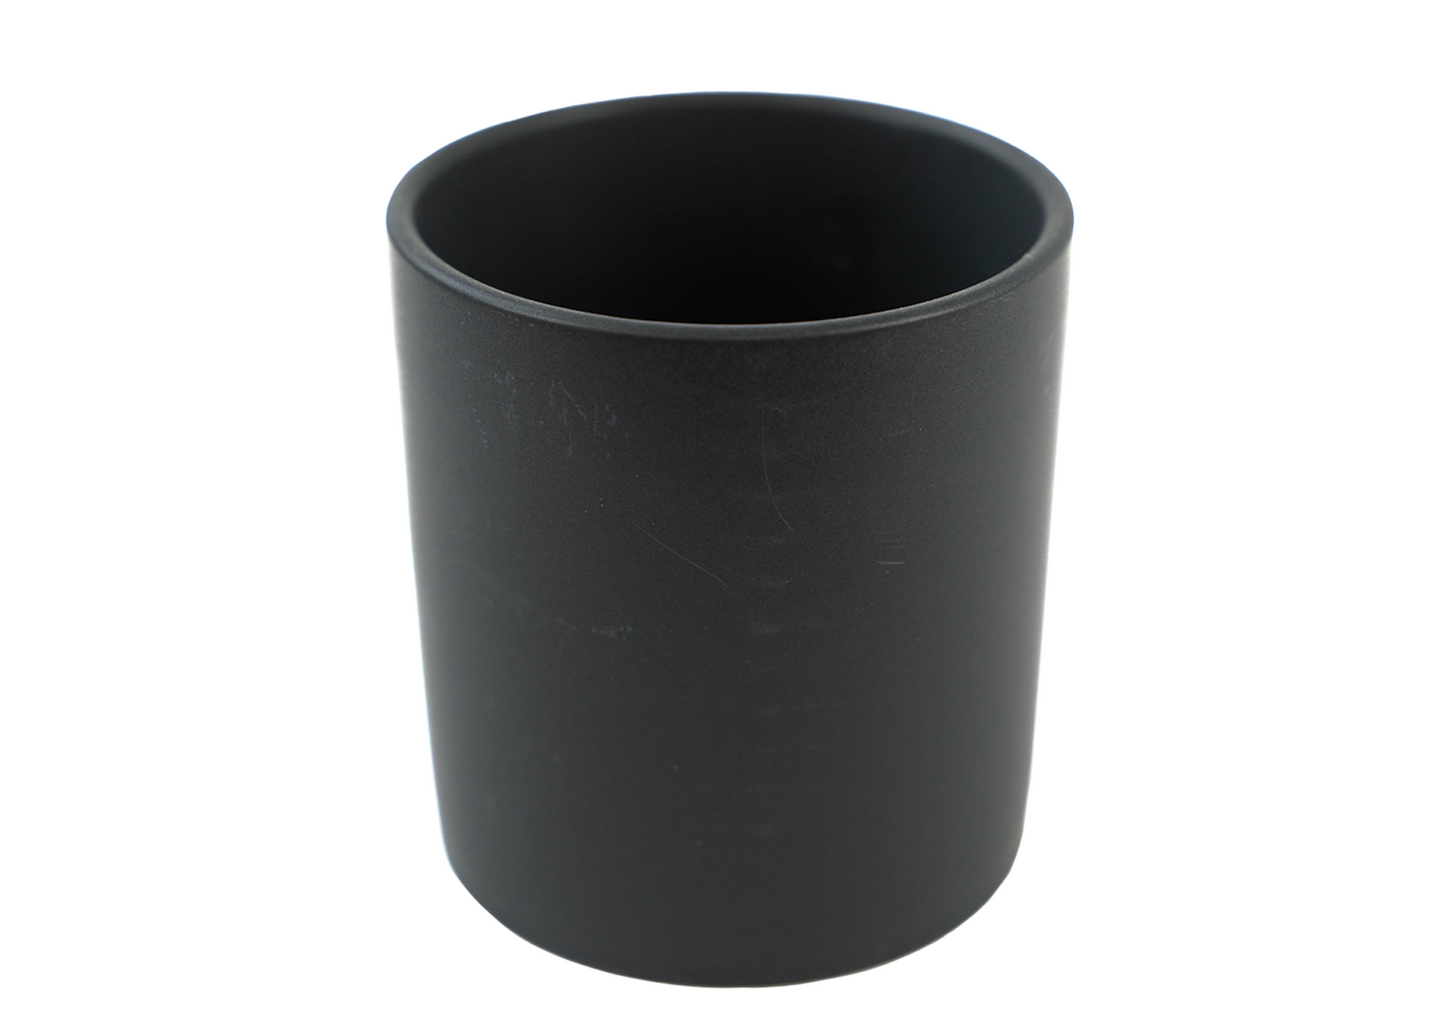 4" Ceramic Cylinder Vase - Black